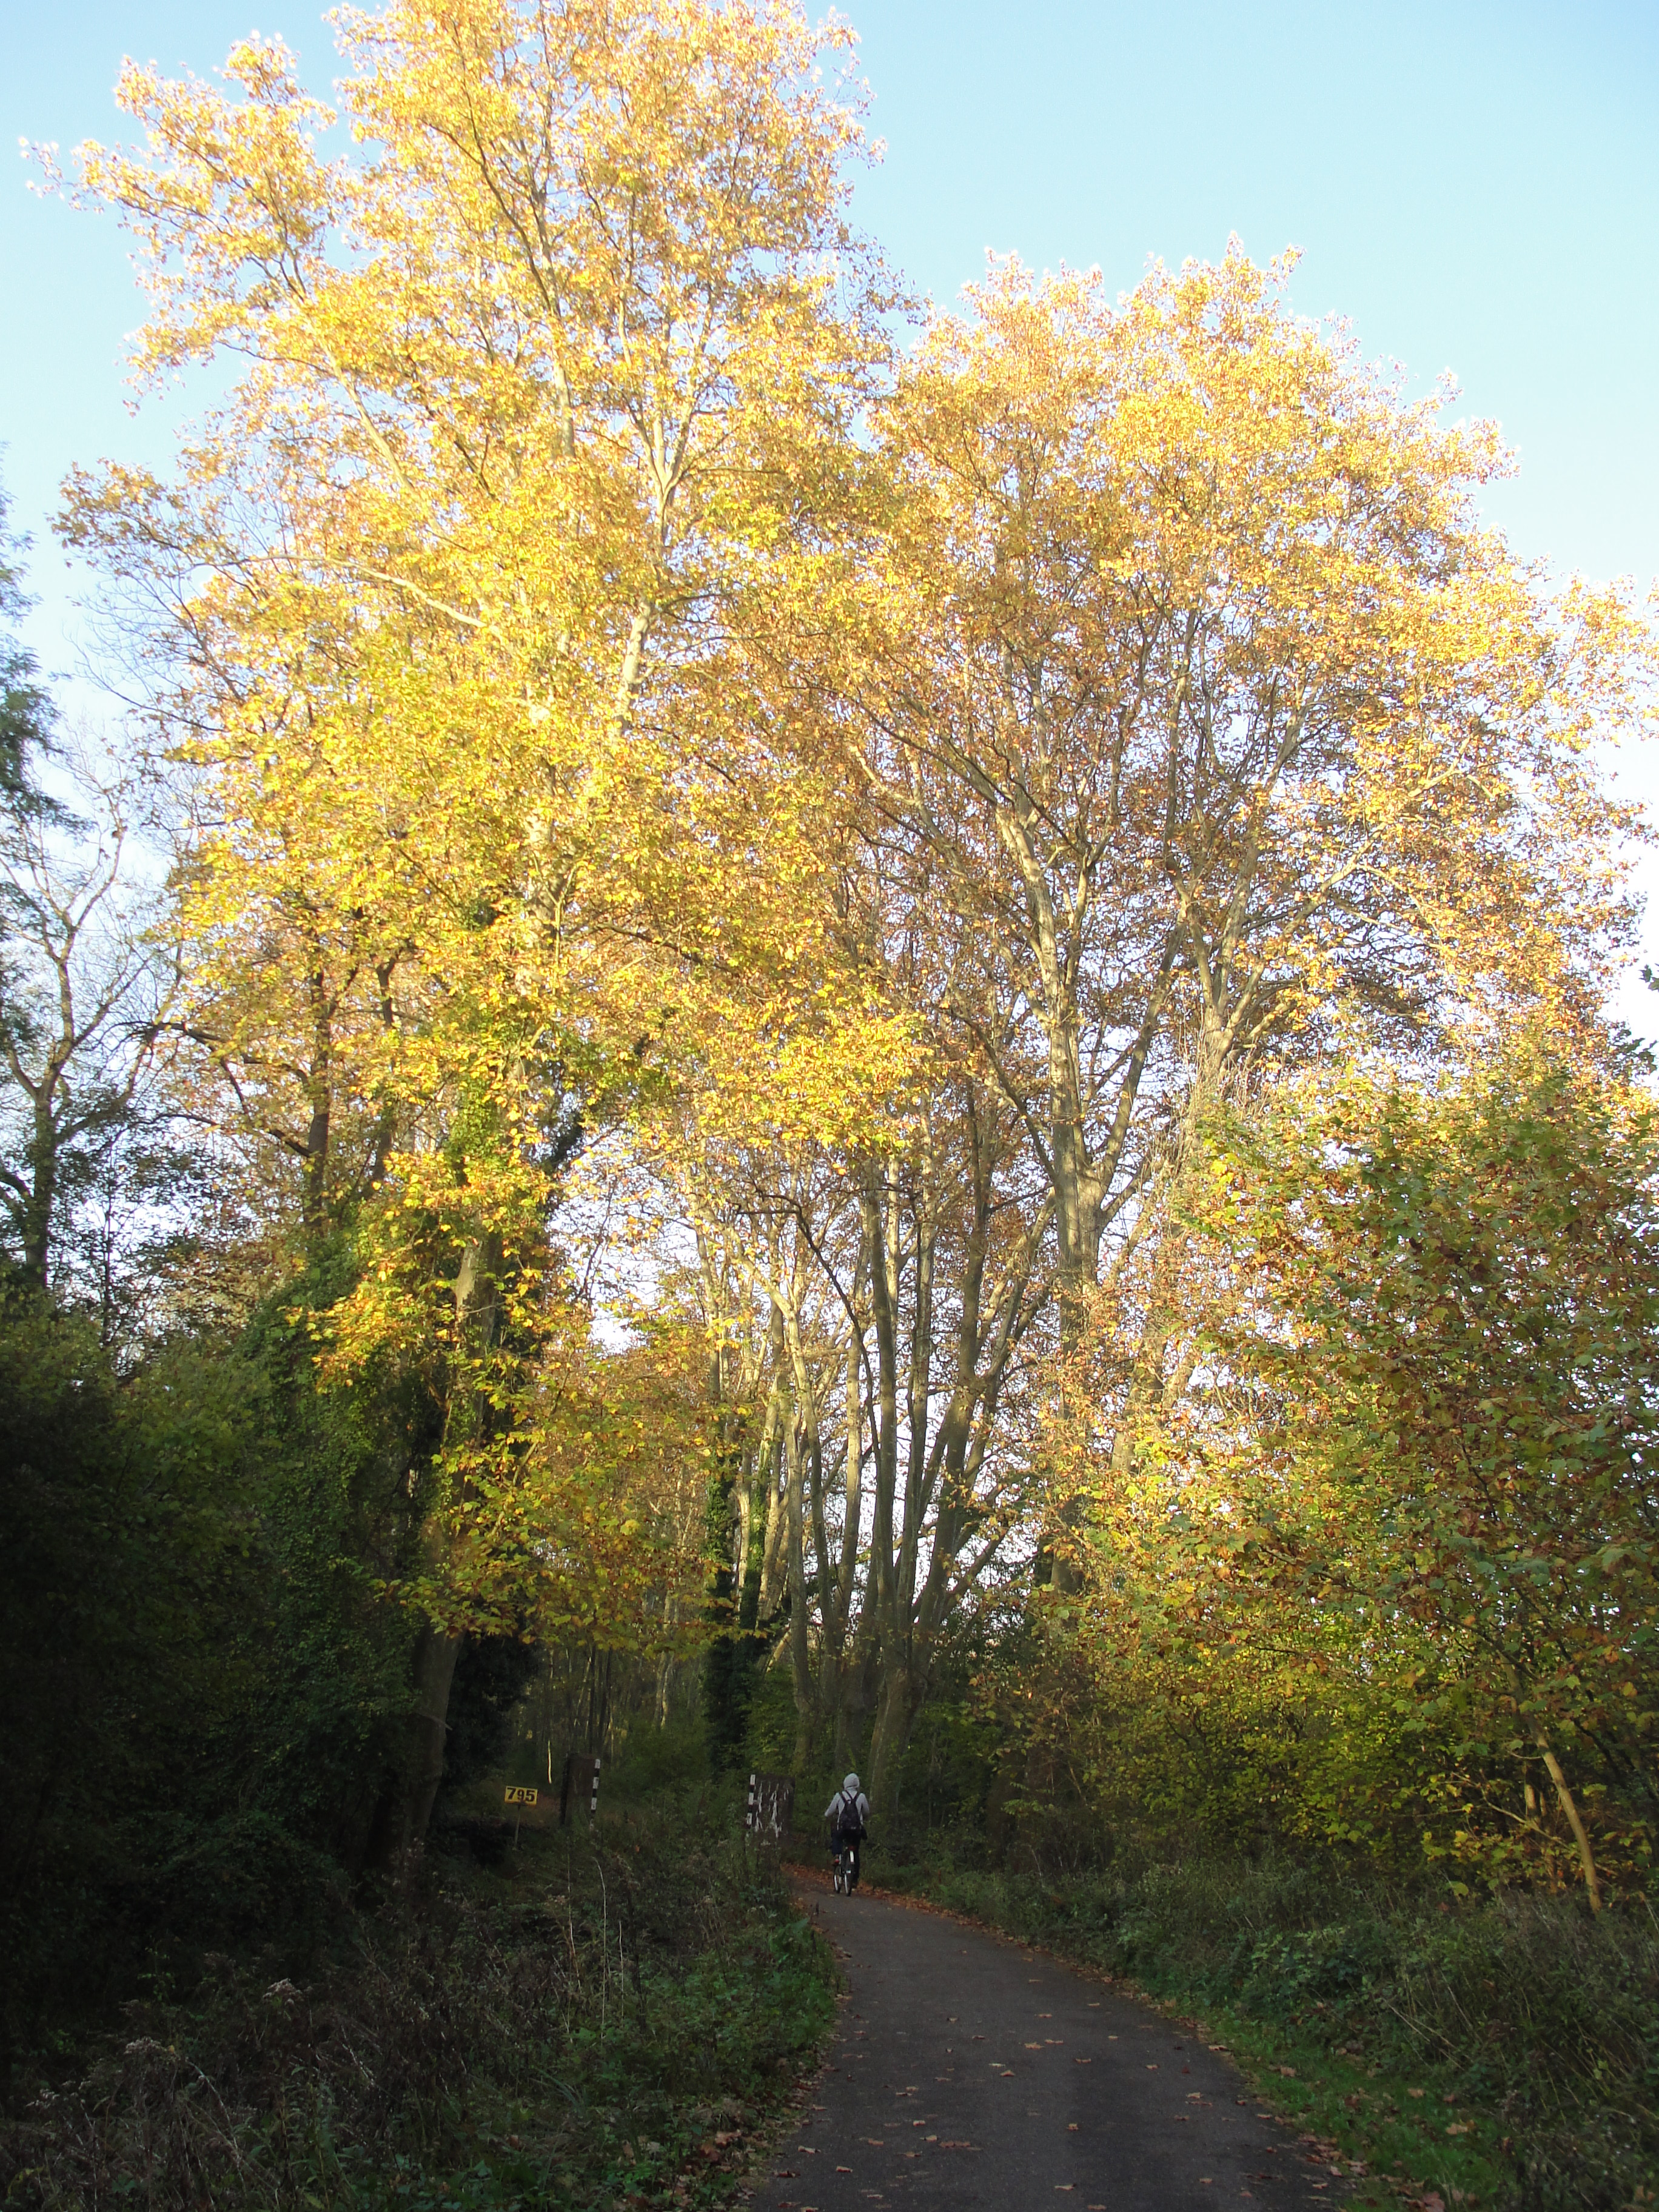 Un chemin à travers une forêt en Automne, avec les arbre qui se sont couvert d'un chaud manteau orangé.